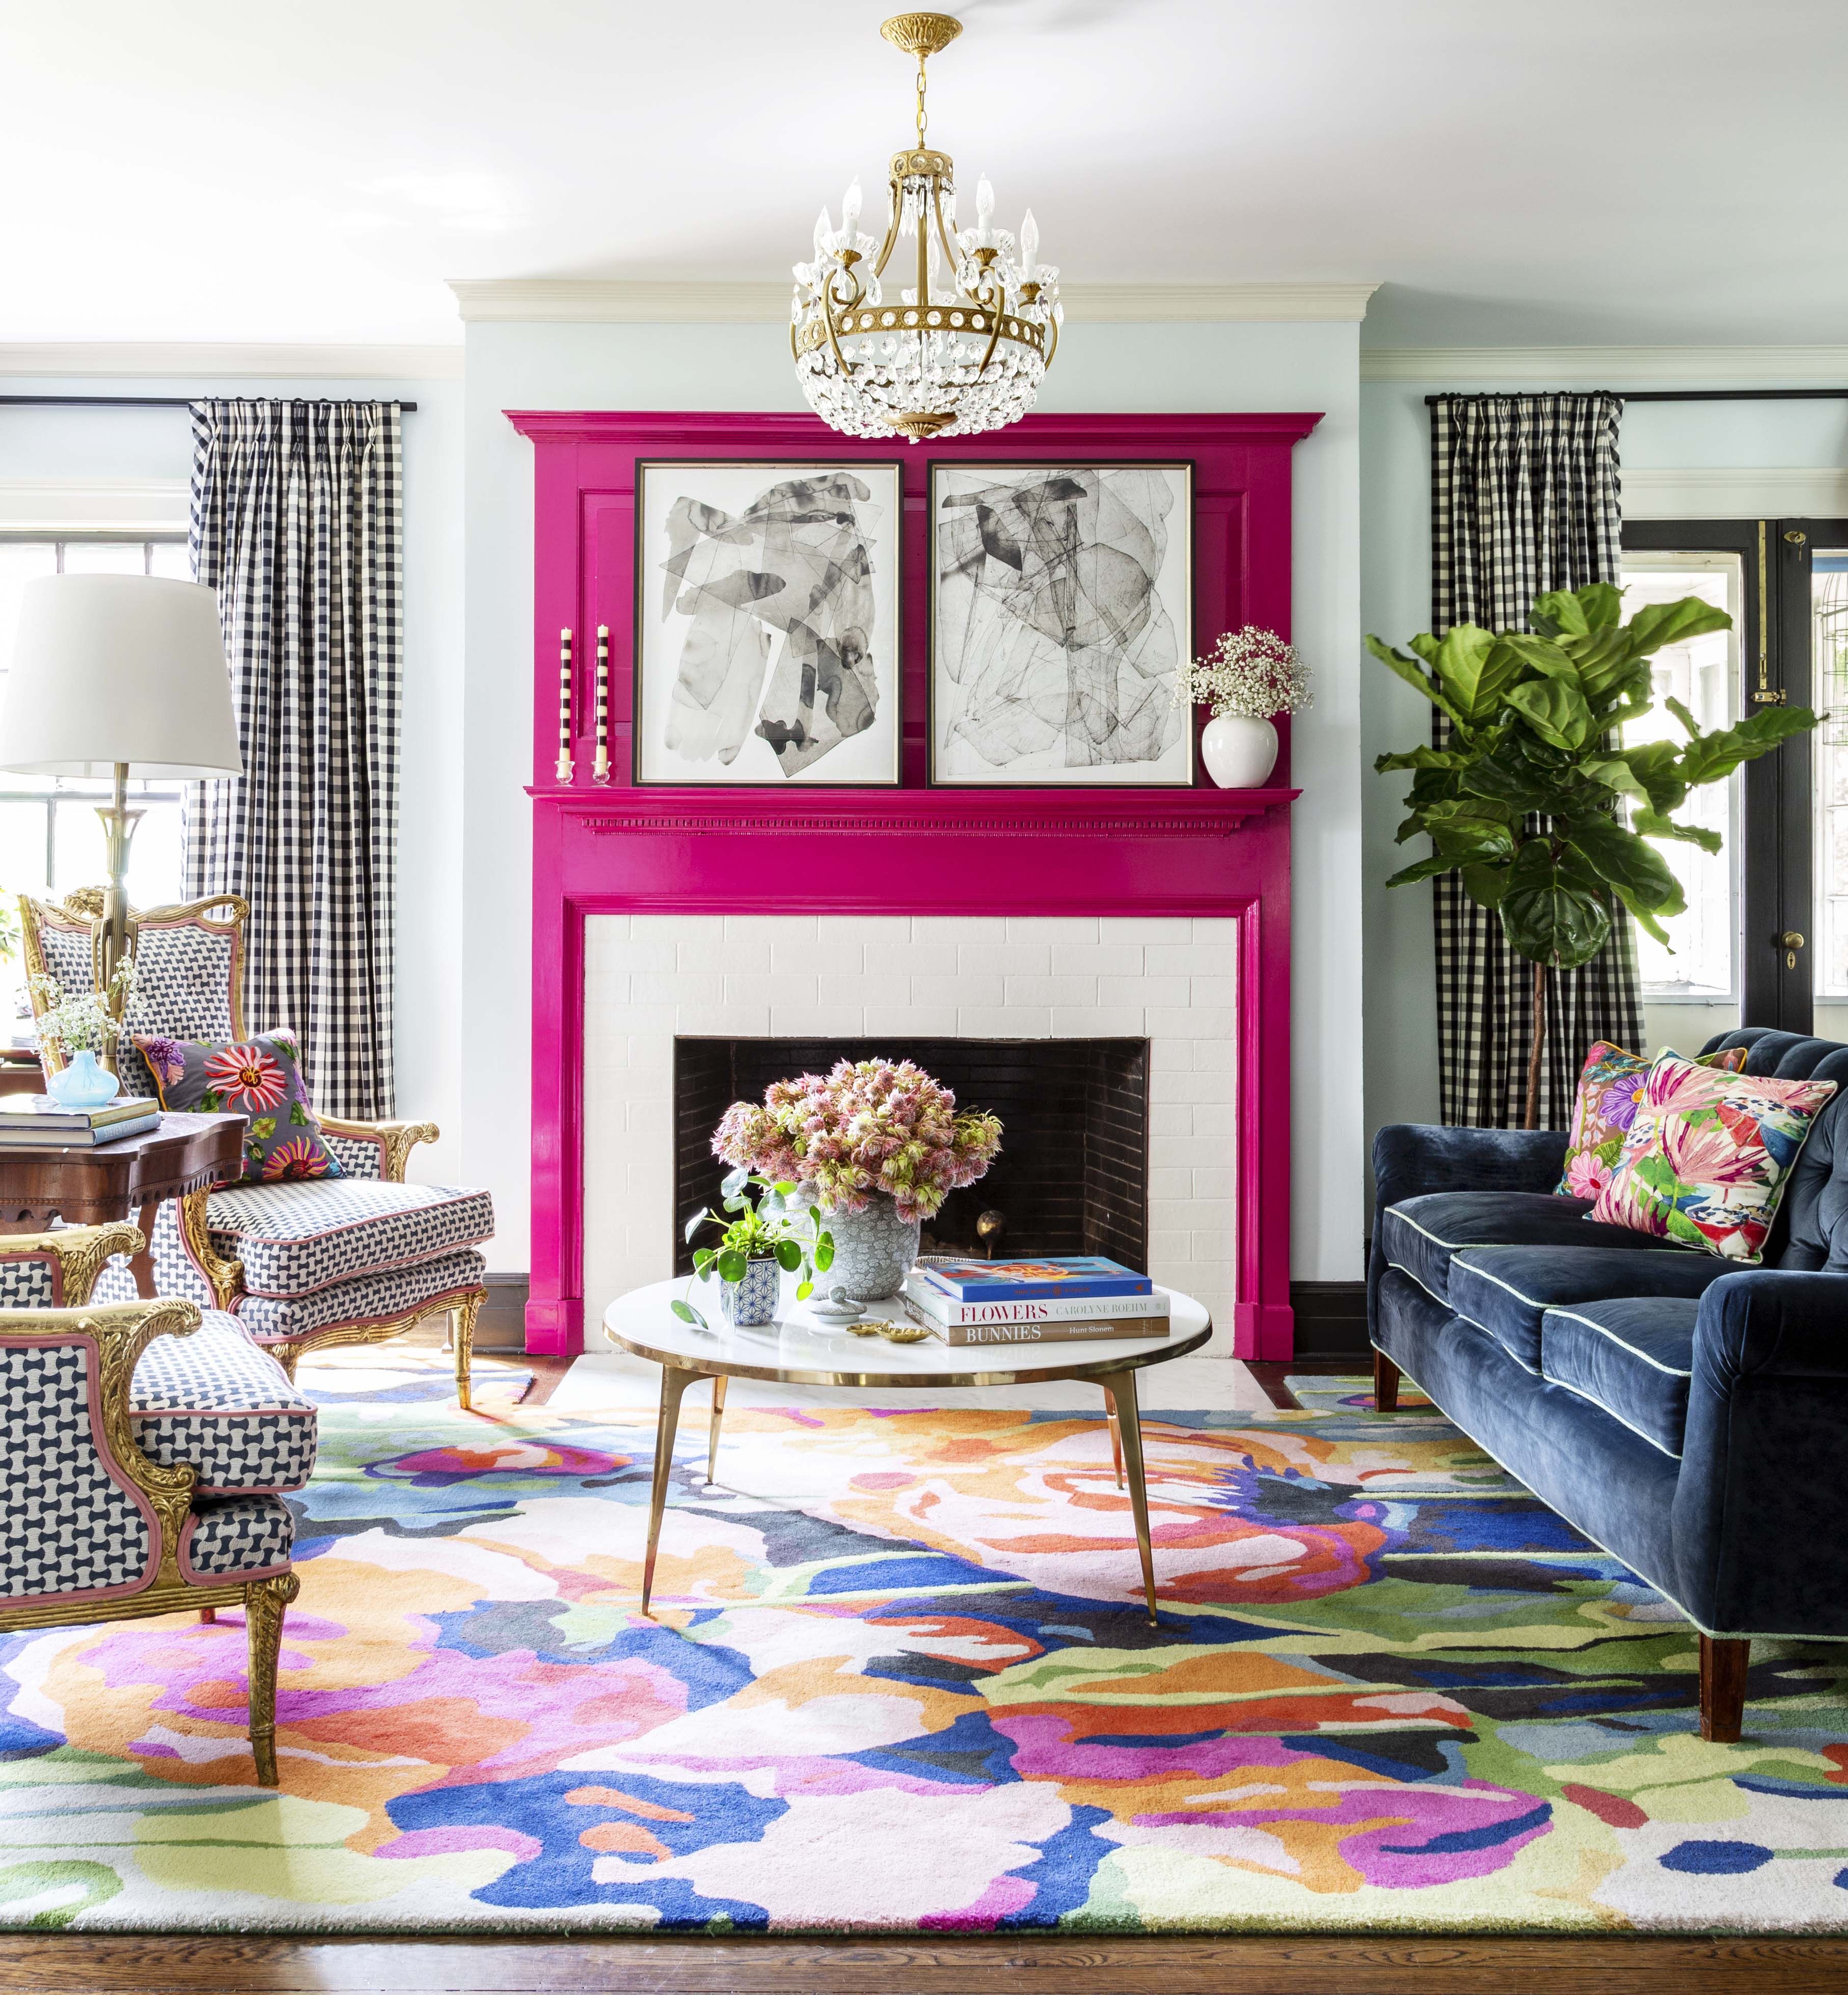 Populer Home Designs: Living Room Design Home Decor : 60 Best Living ...